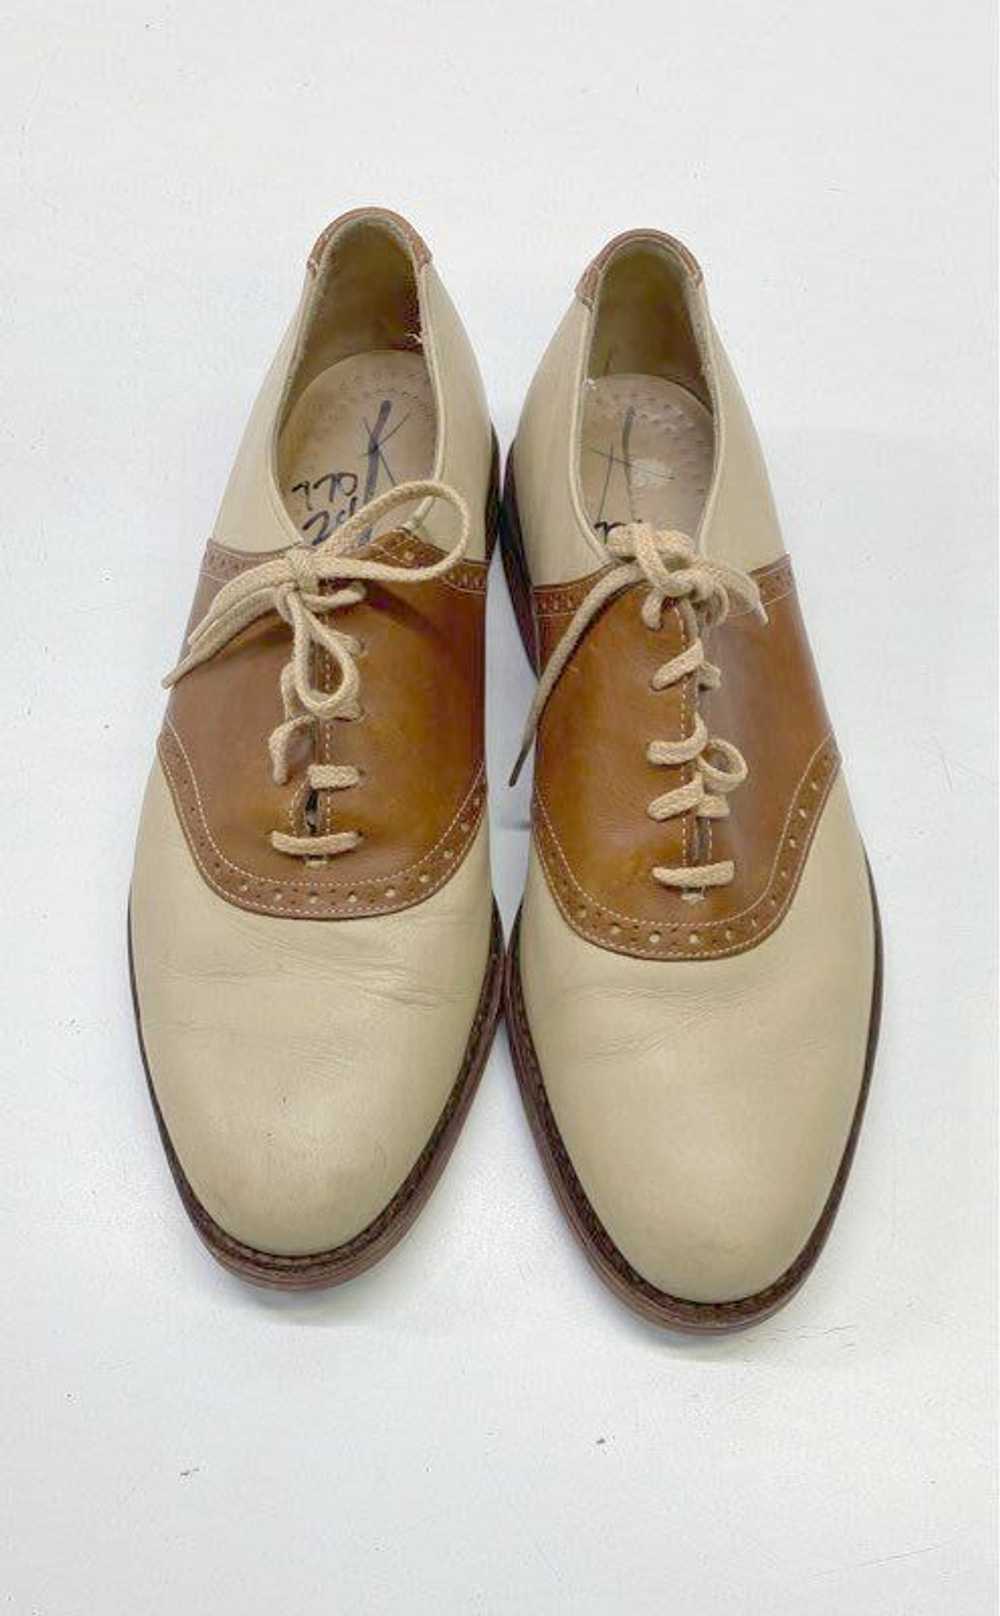 Cole Haan Men's Brown/Tan Saddle Shoes Sz. 8.5 - image 5